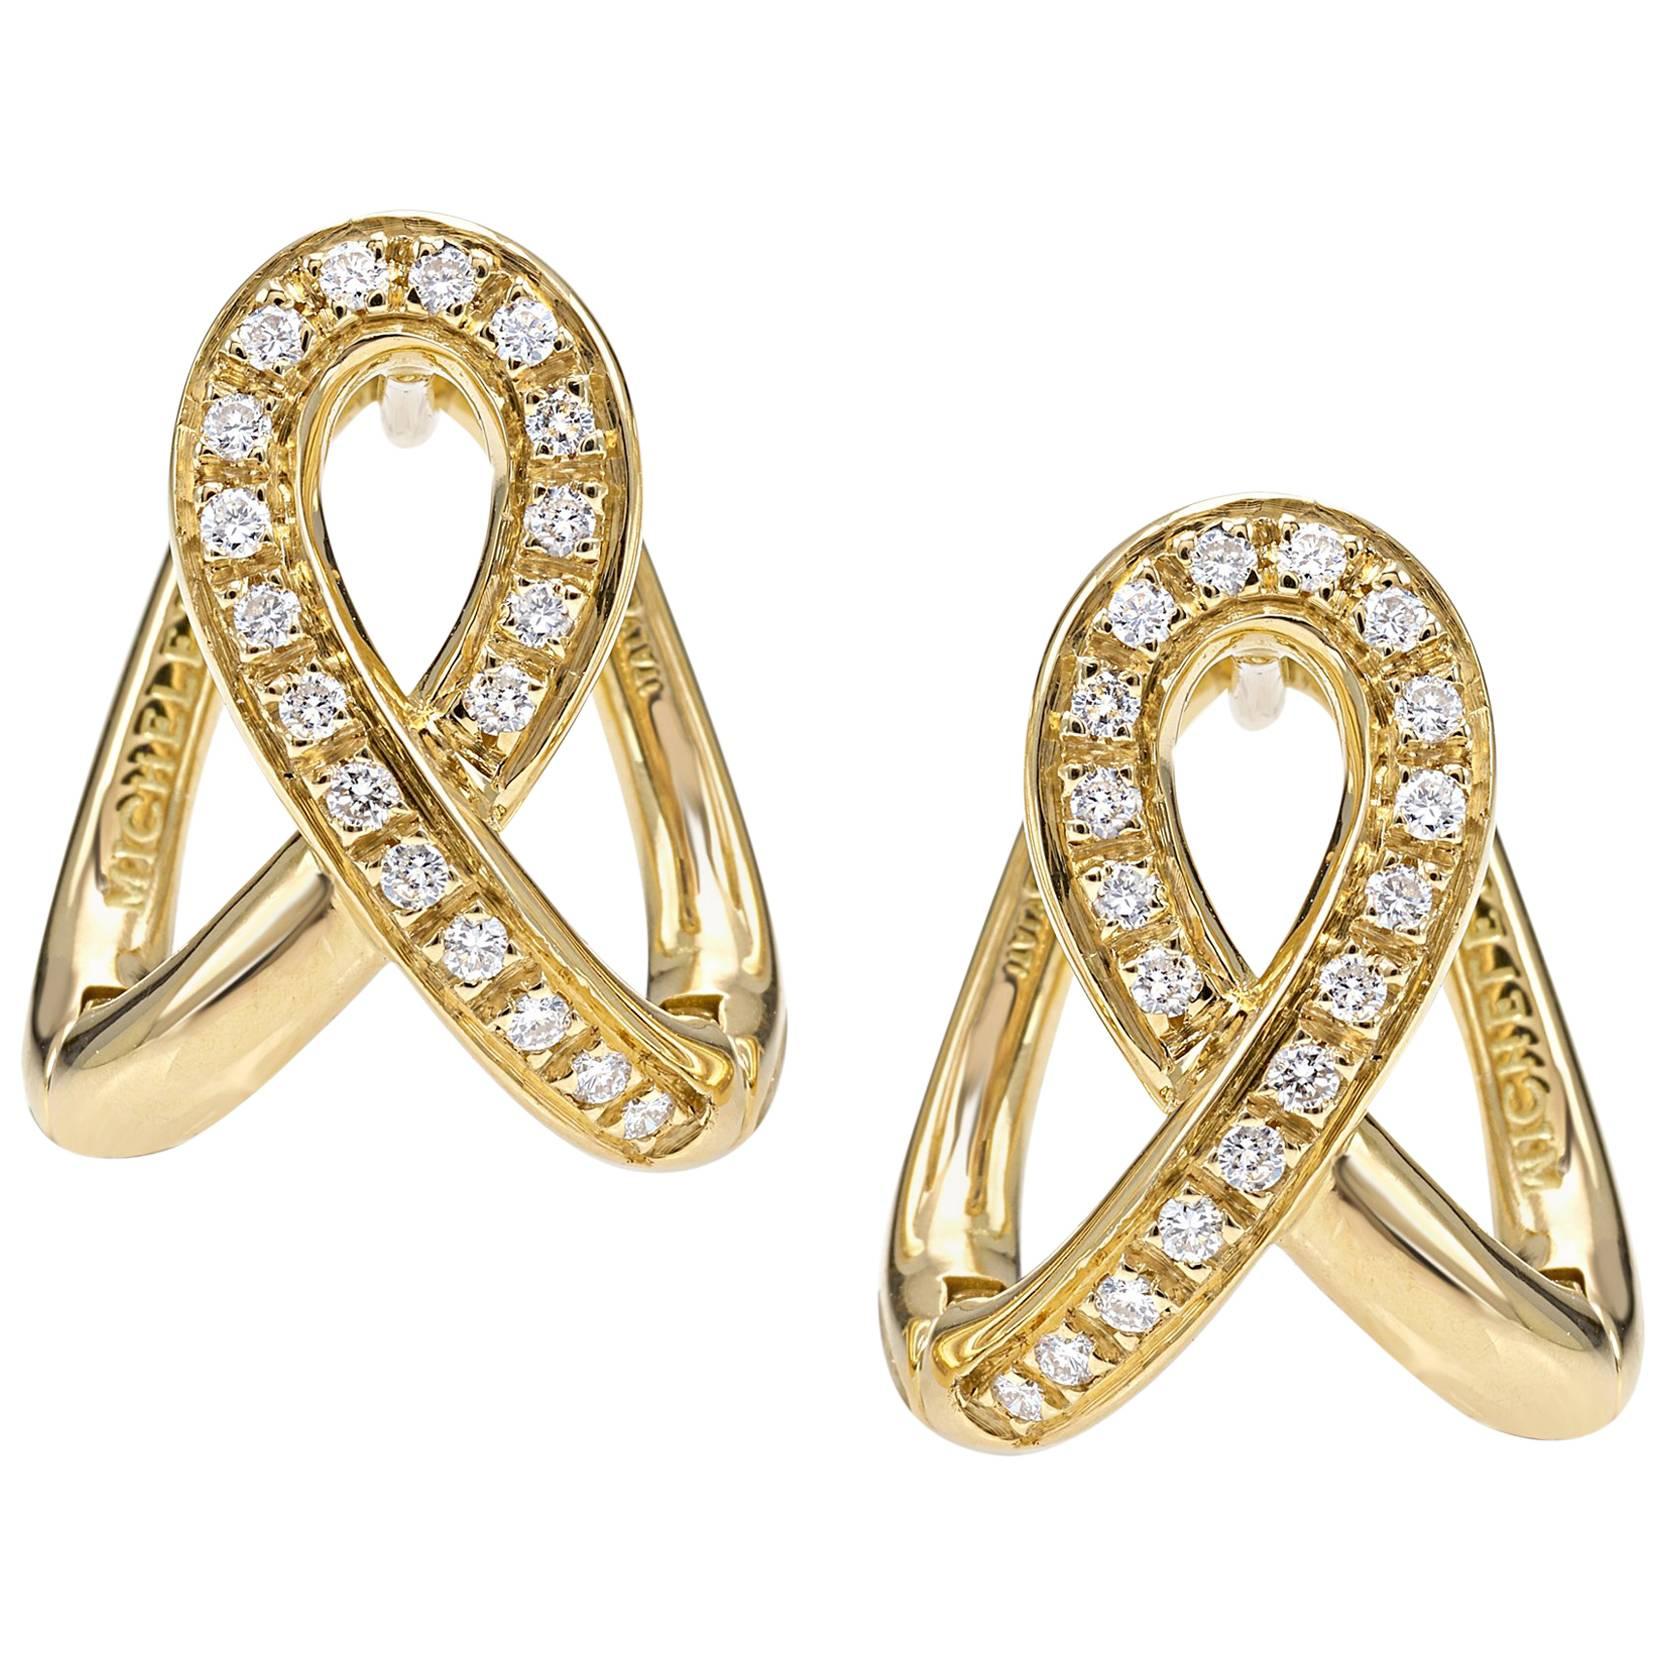 Boucles d'oreilles de la collection « Essence » en or jaune 18 carats et diamants